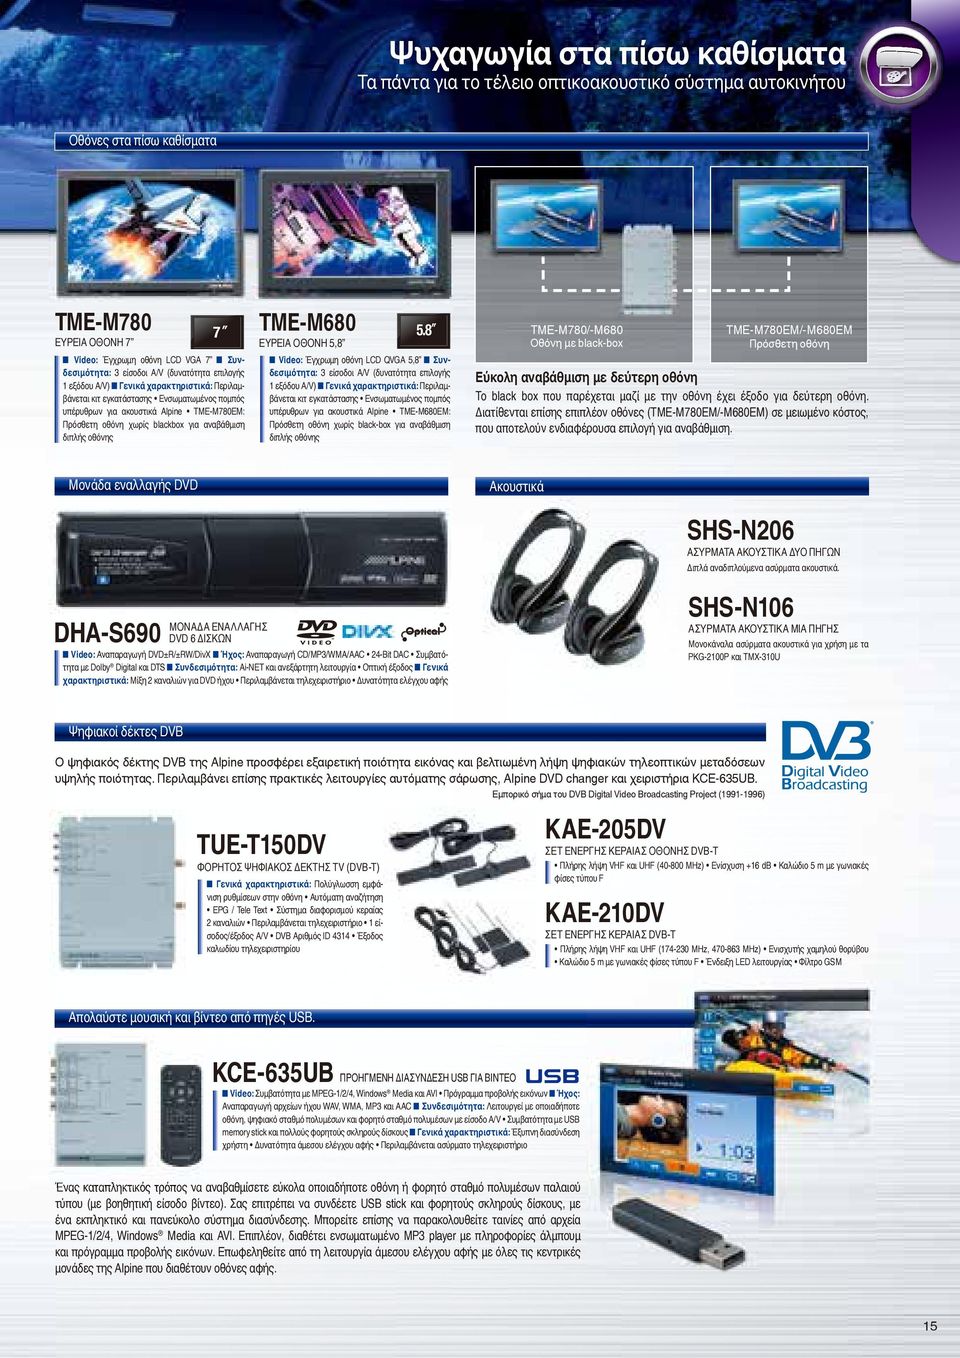 πομπός υπέρυθρων για ακουστικά Alpine TME-M780EM: Πρόσθετη οθόνη χωρίς blackbox για αναβάθμιση 8.5 διπλής οθόνης Μονάδα εναλλαγής DVD DHA-S690 10.2 TME-M680 6.5 5.